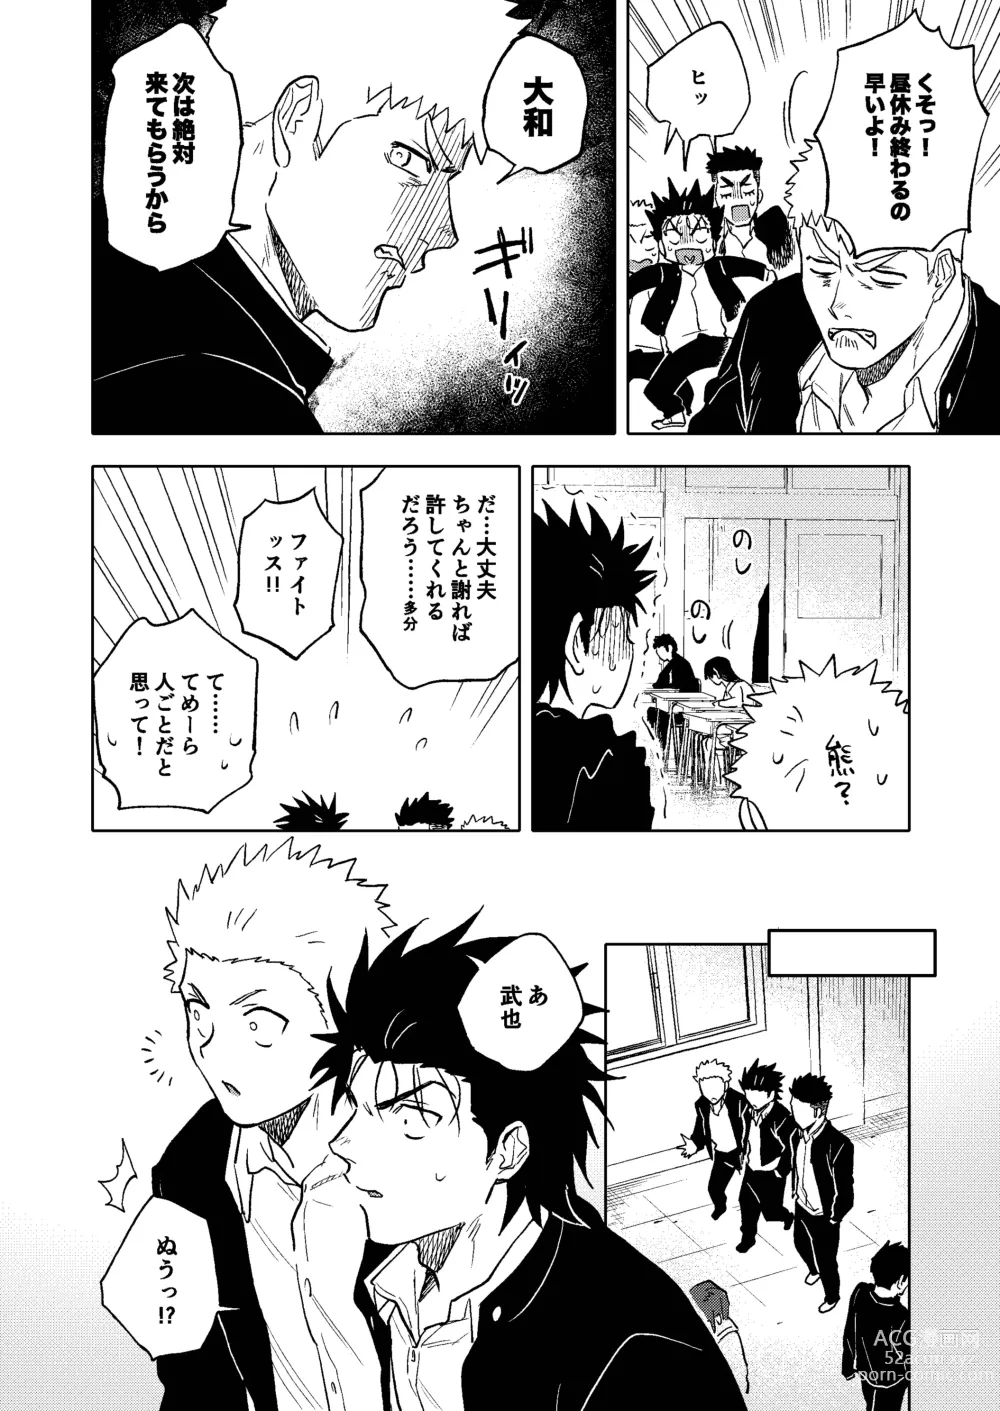 Page 9 of doujinshi Dainarishounari 2